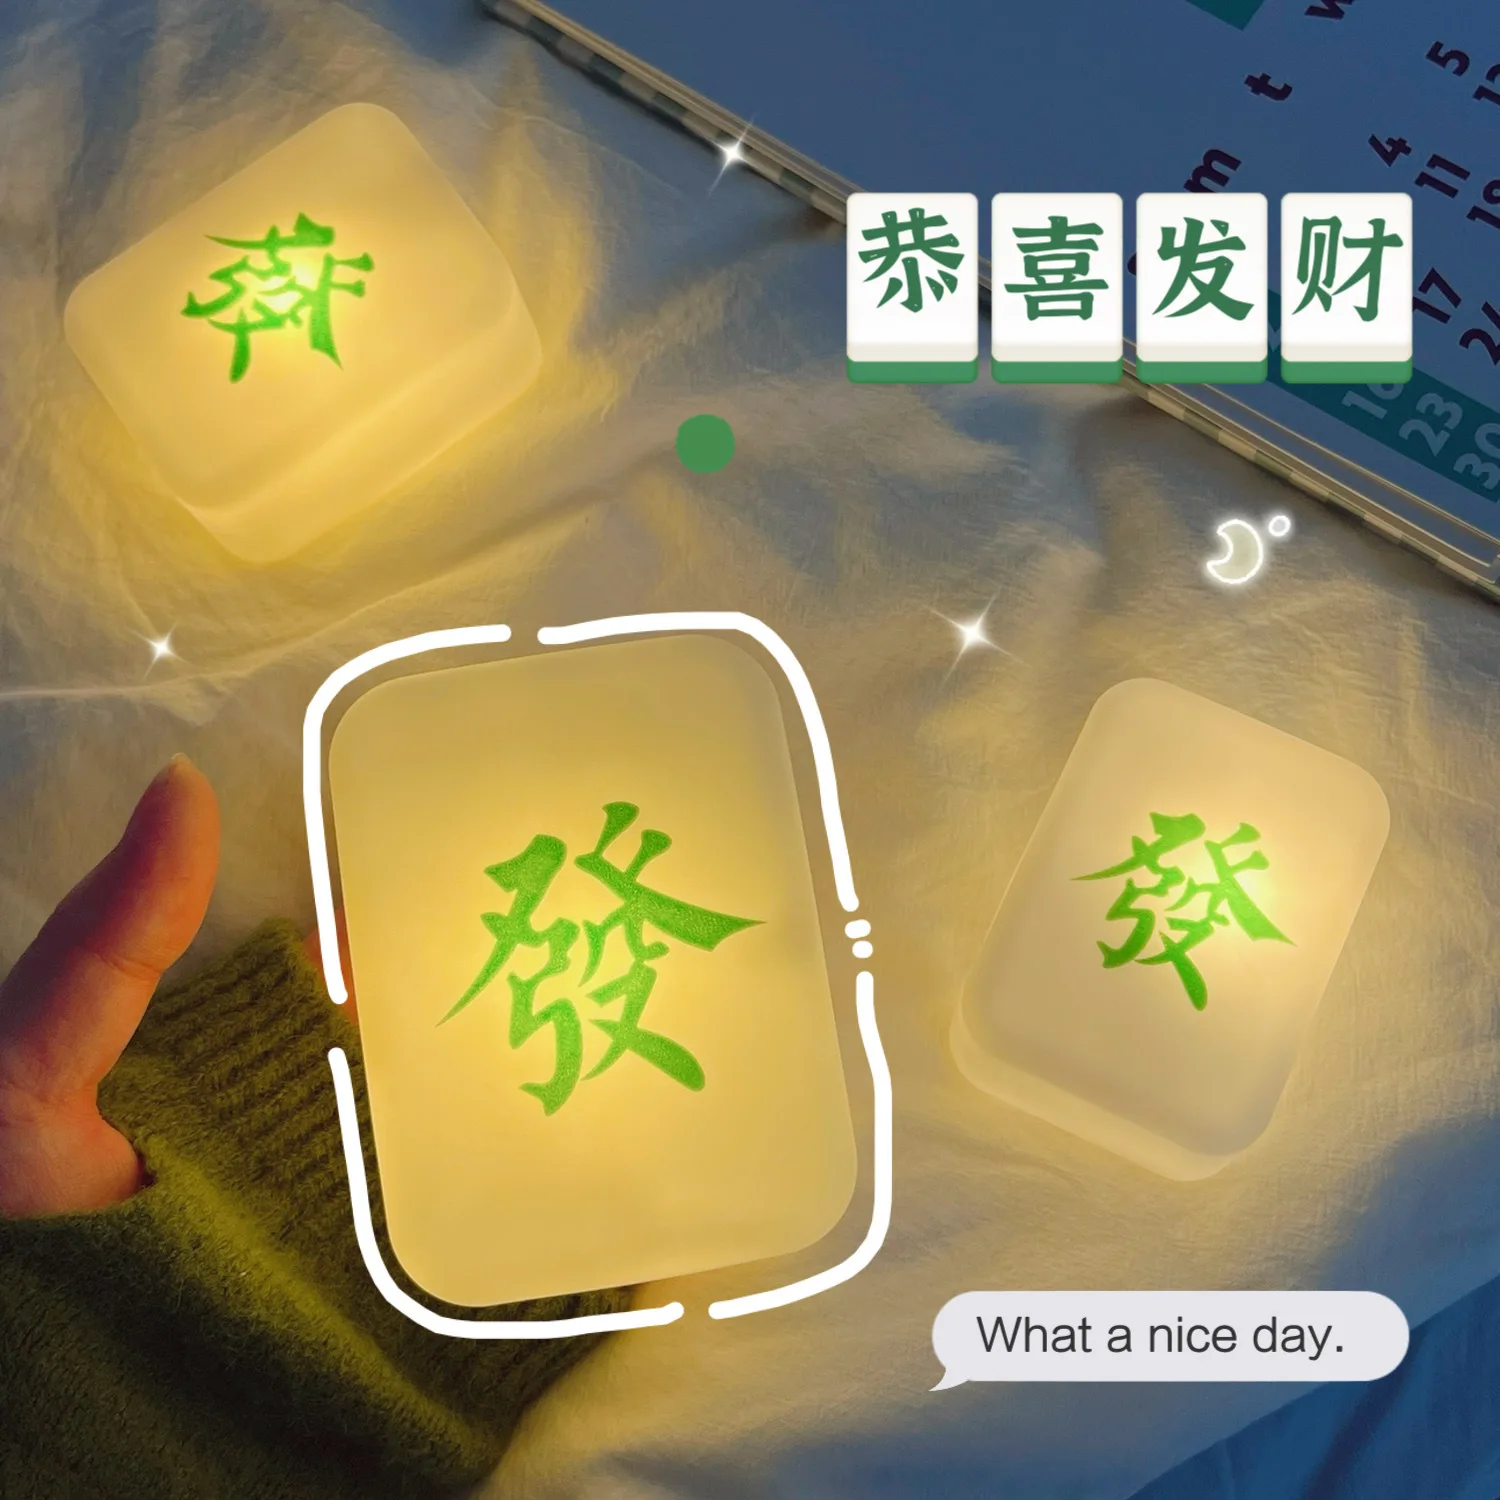 Obrázok /content/Čínsky-nočné-osvetlenie-populárne-mäkké-svetlo-2-103465.jpeg